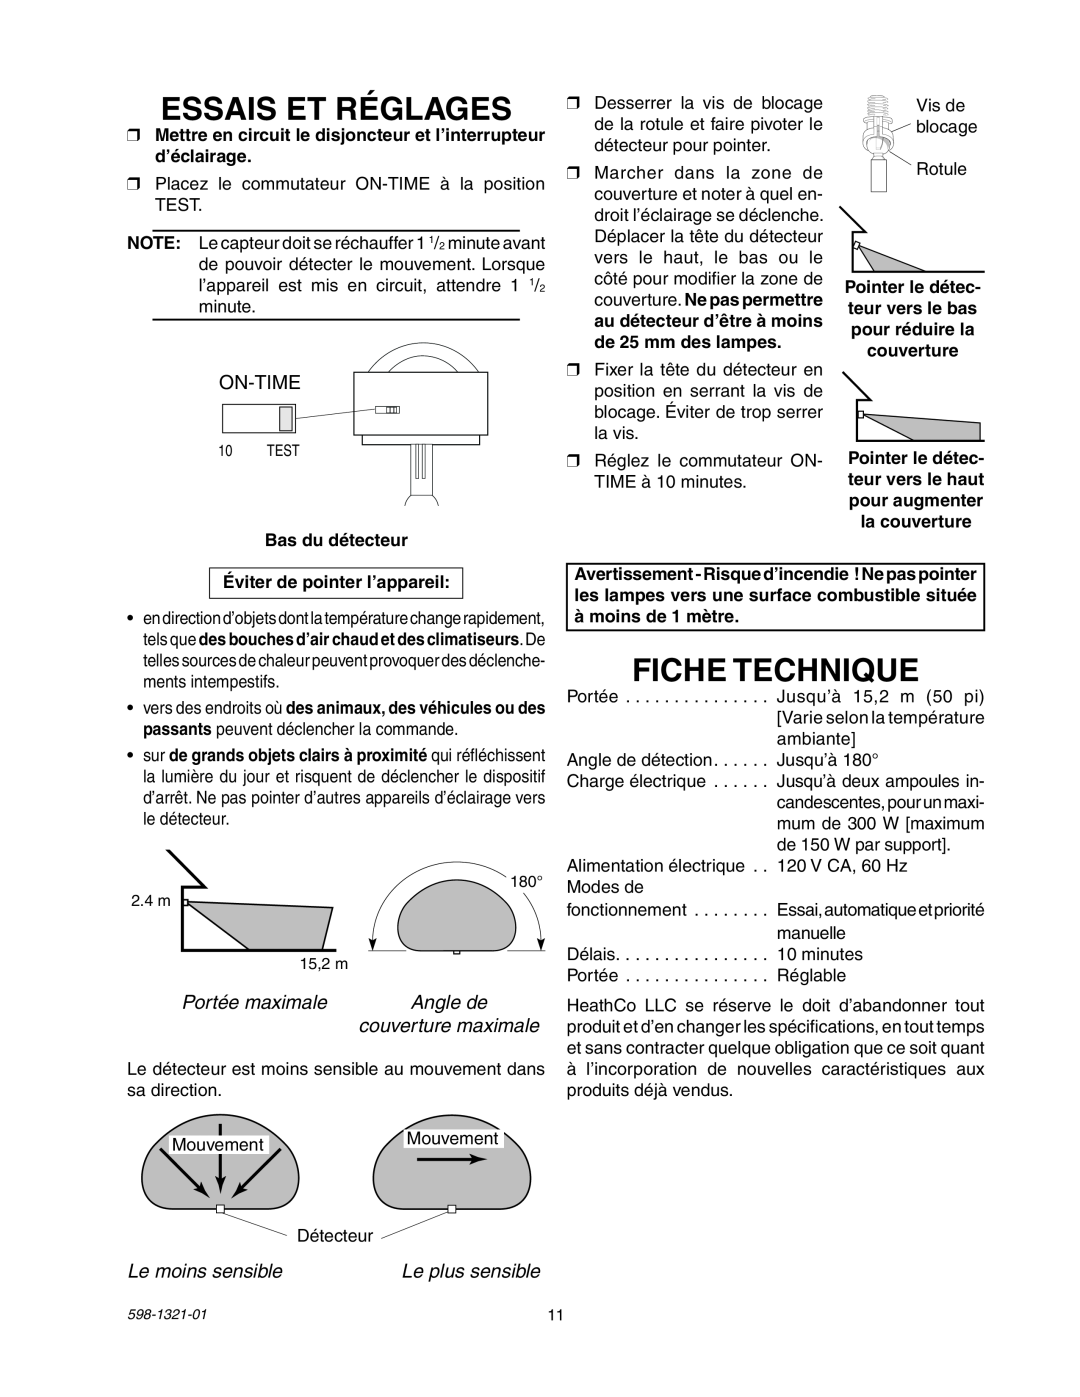 Heath Zenith BL-1800 manual Essais Et Réglages, Fiche Technique, On-Time, Portée maximale, Angle de, couverture maximale 